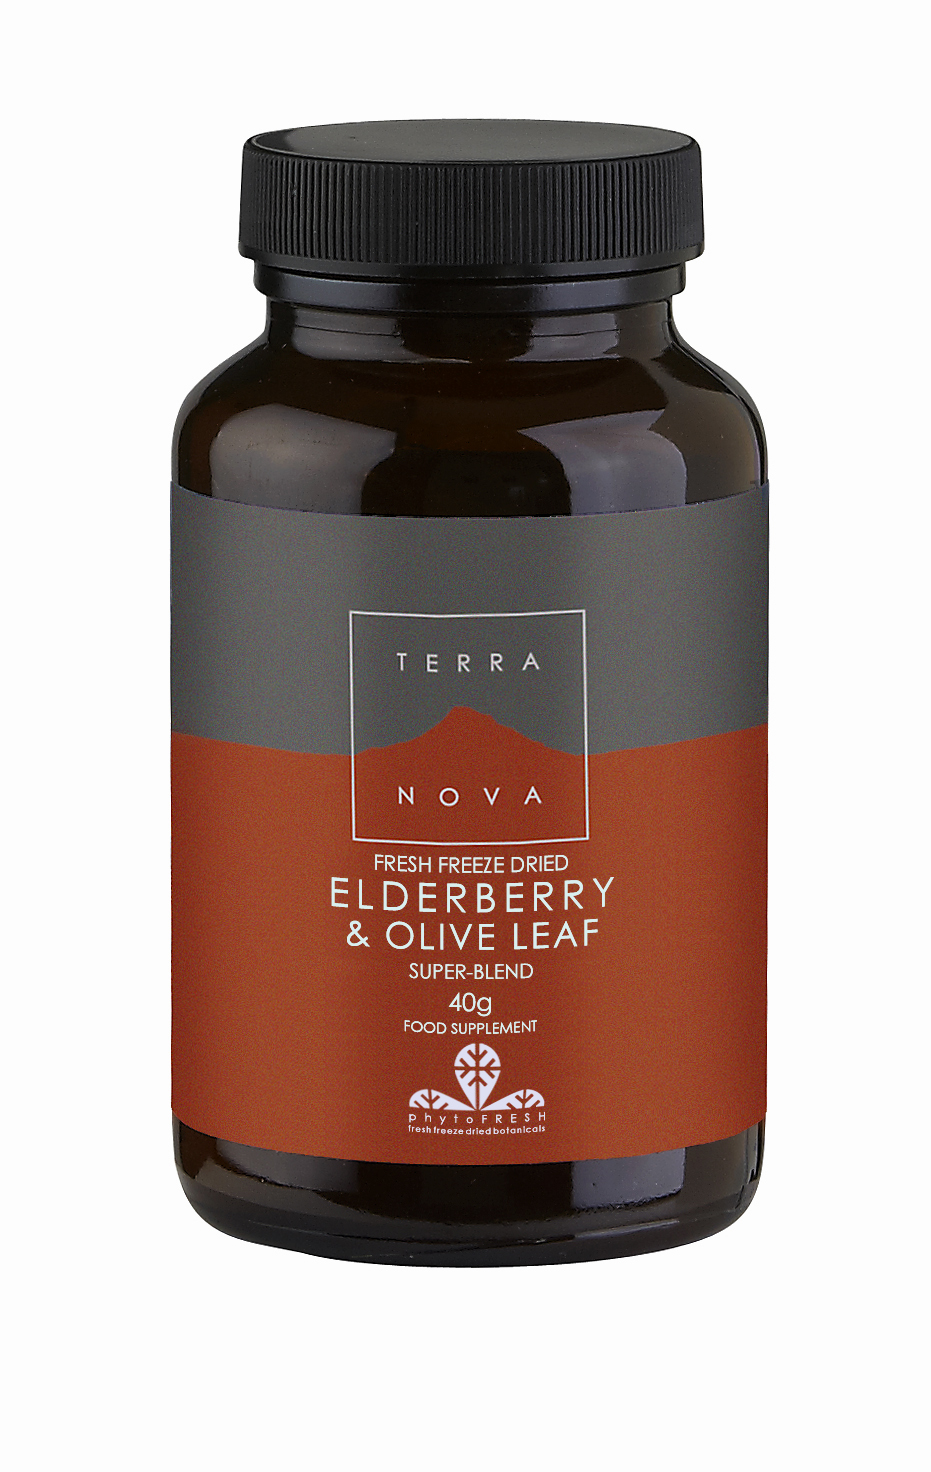 Elderberry and Olive Leaf Super-Blend 40g